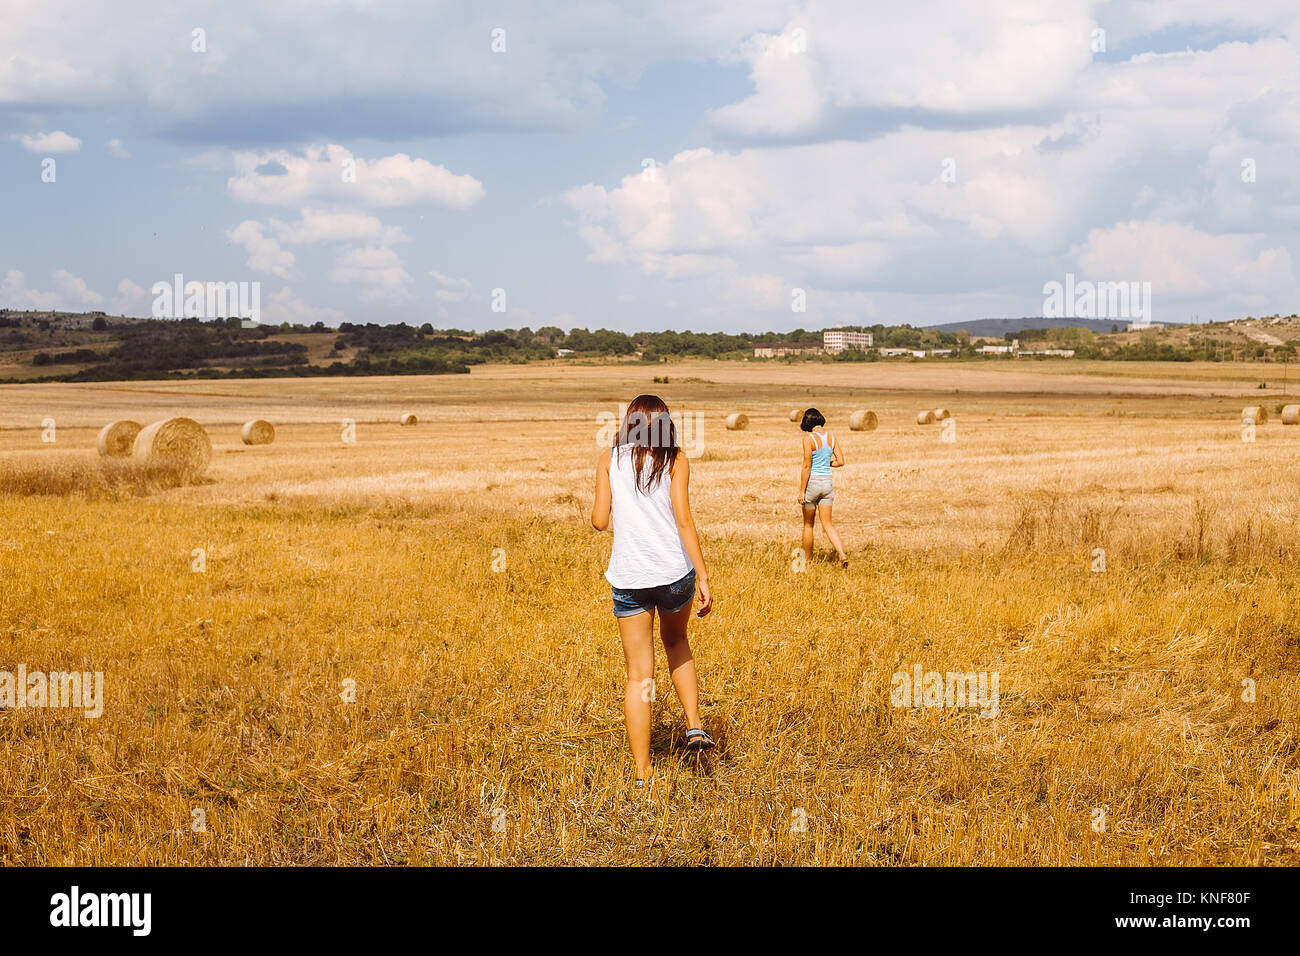 Rear view of women walking in wheat field Stock Photo